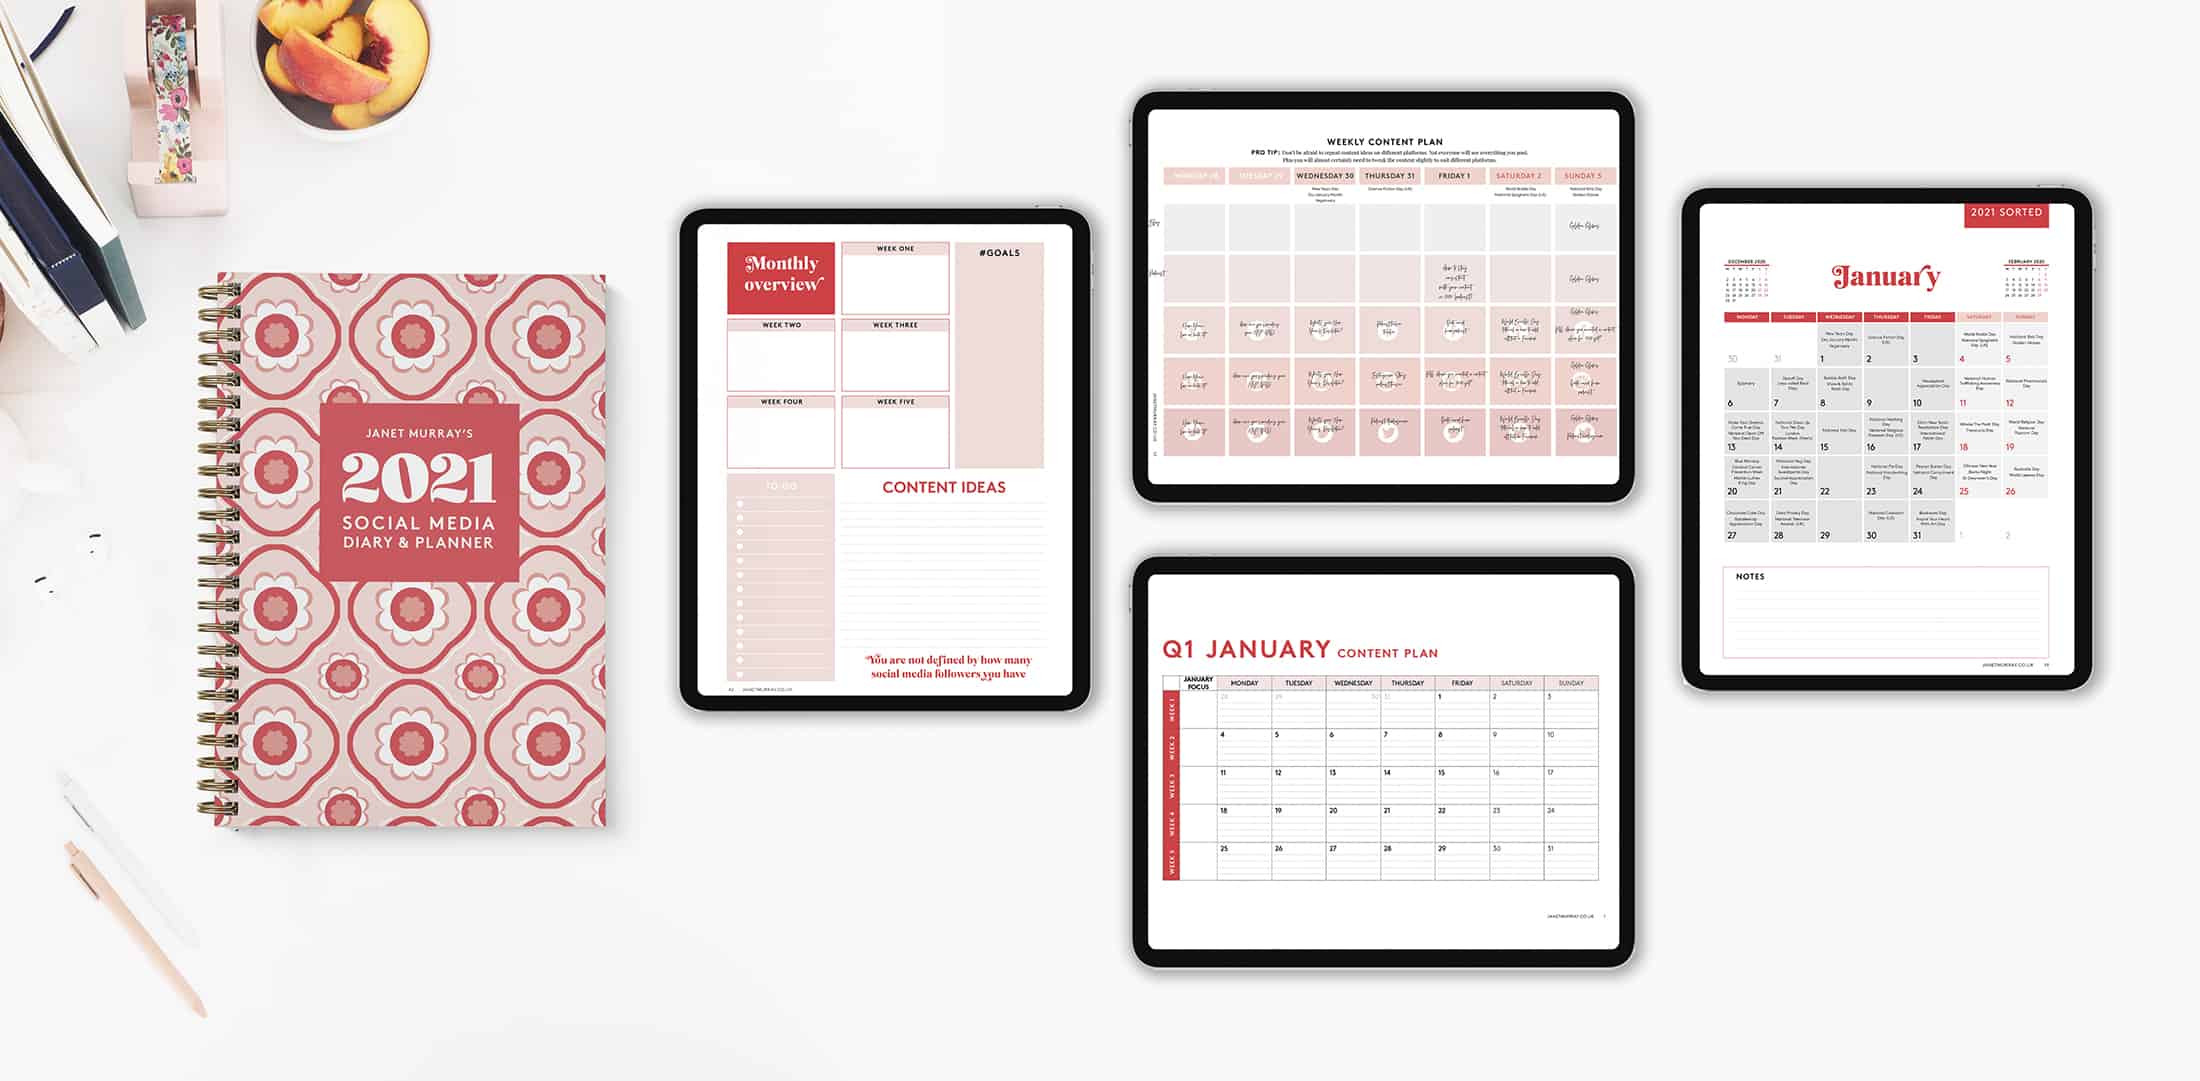 Janet Murray Social Media Planning Calendar